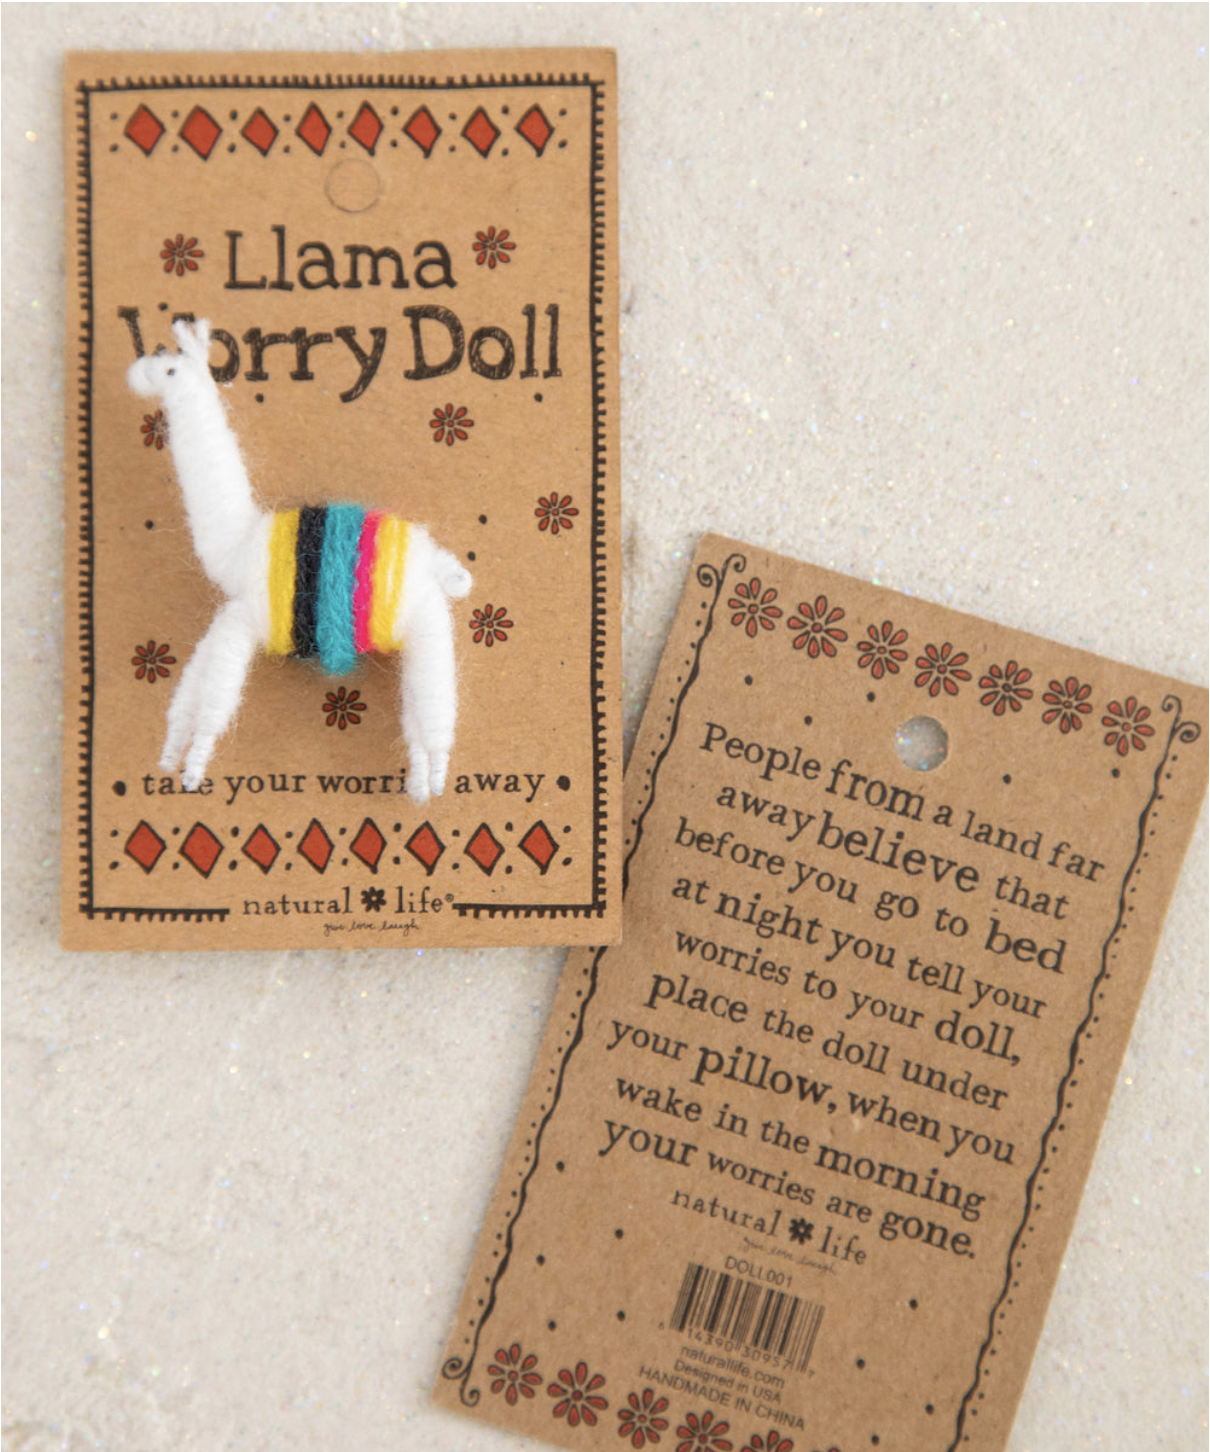 Llama Worry Doll